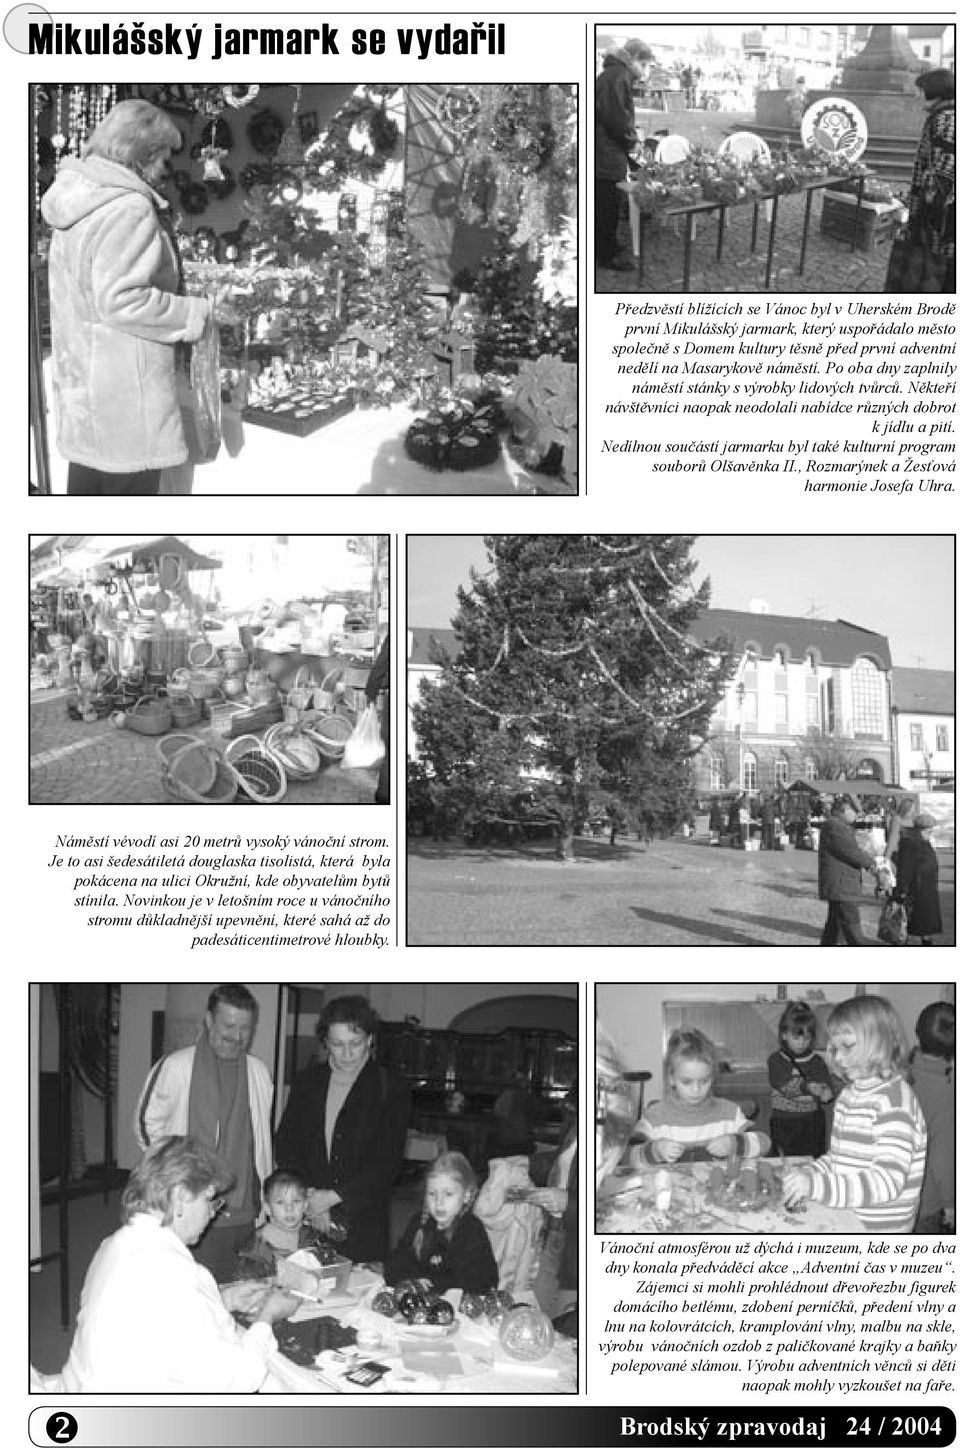 Nedílnou součástí jarmarku byl také kulturní program souborů Olšavěnka II., Rozmarýnek a Žesťová harmonie Josefa Uhra. Náměstí vévodí asi 20 metrů vysoký vánoční strom.